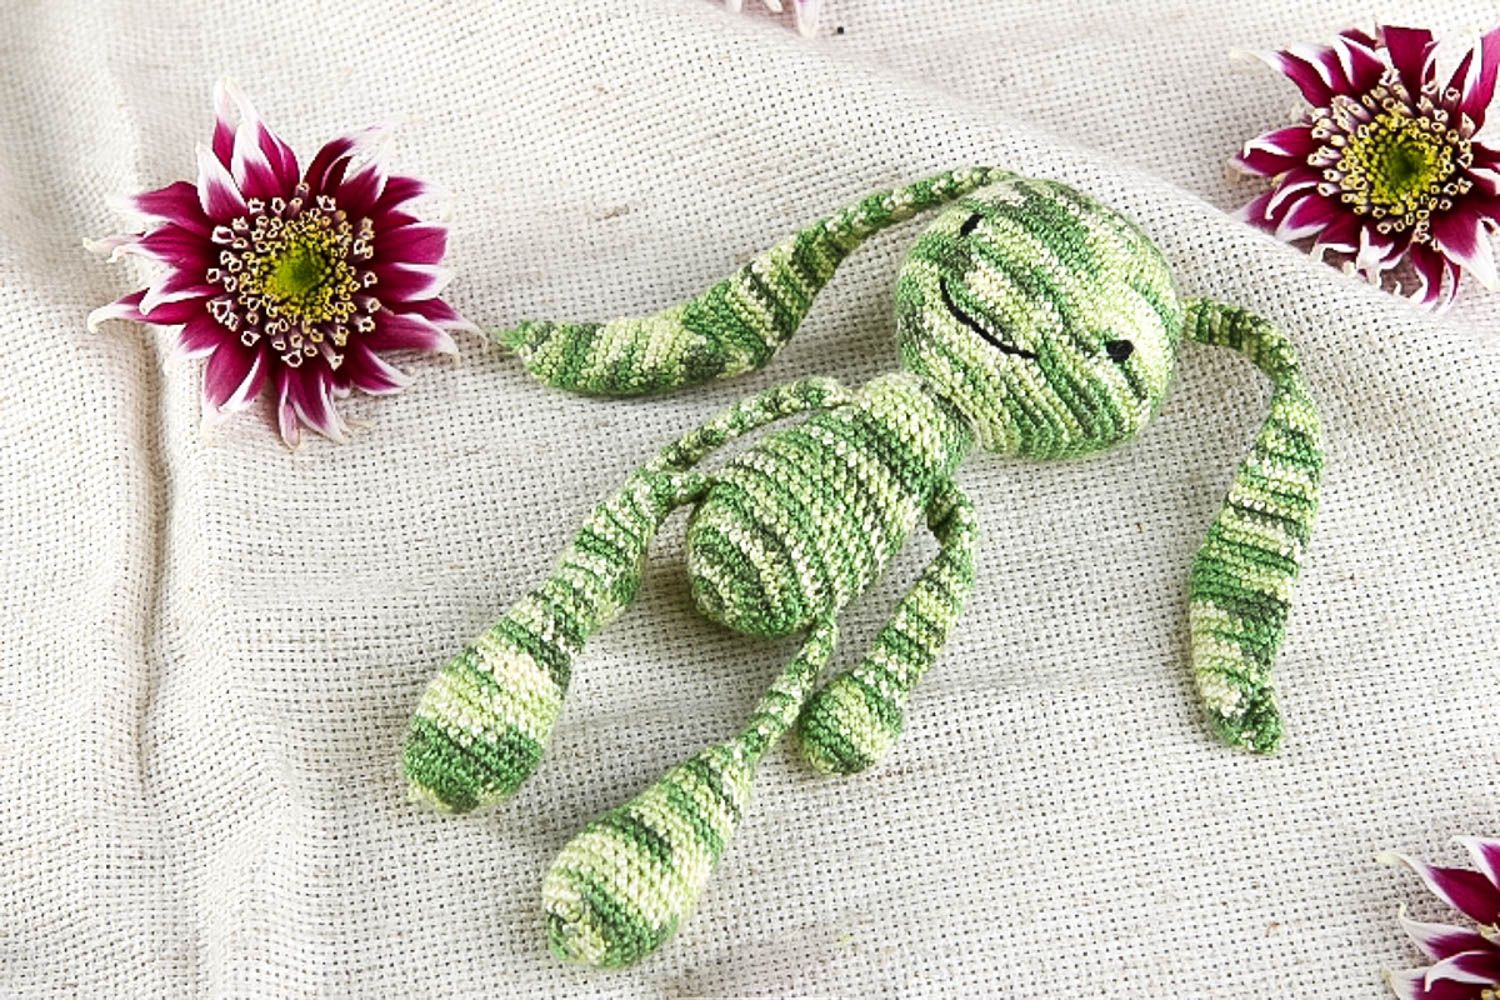 Handmade soft toy crocheted toys stuffed toys for babies nursery decor ideas photo 1